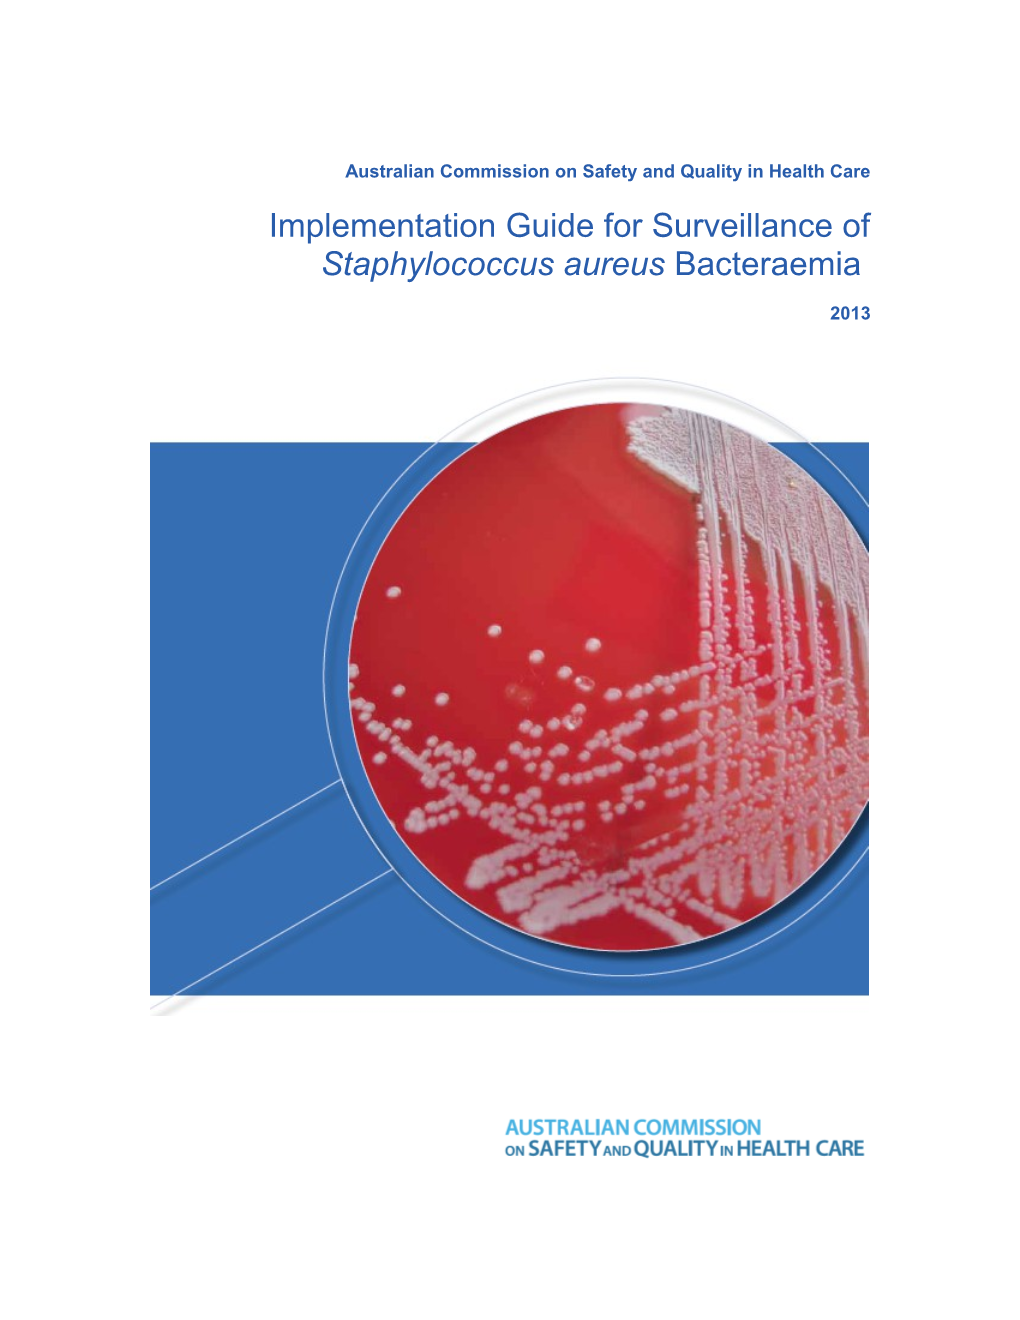 Implementation Guide for Surveillance of Staphylococcus Aureus Bacteraemia